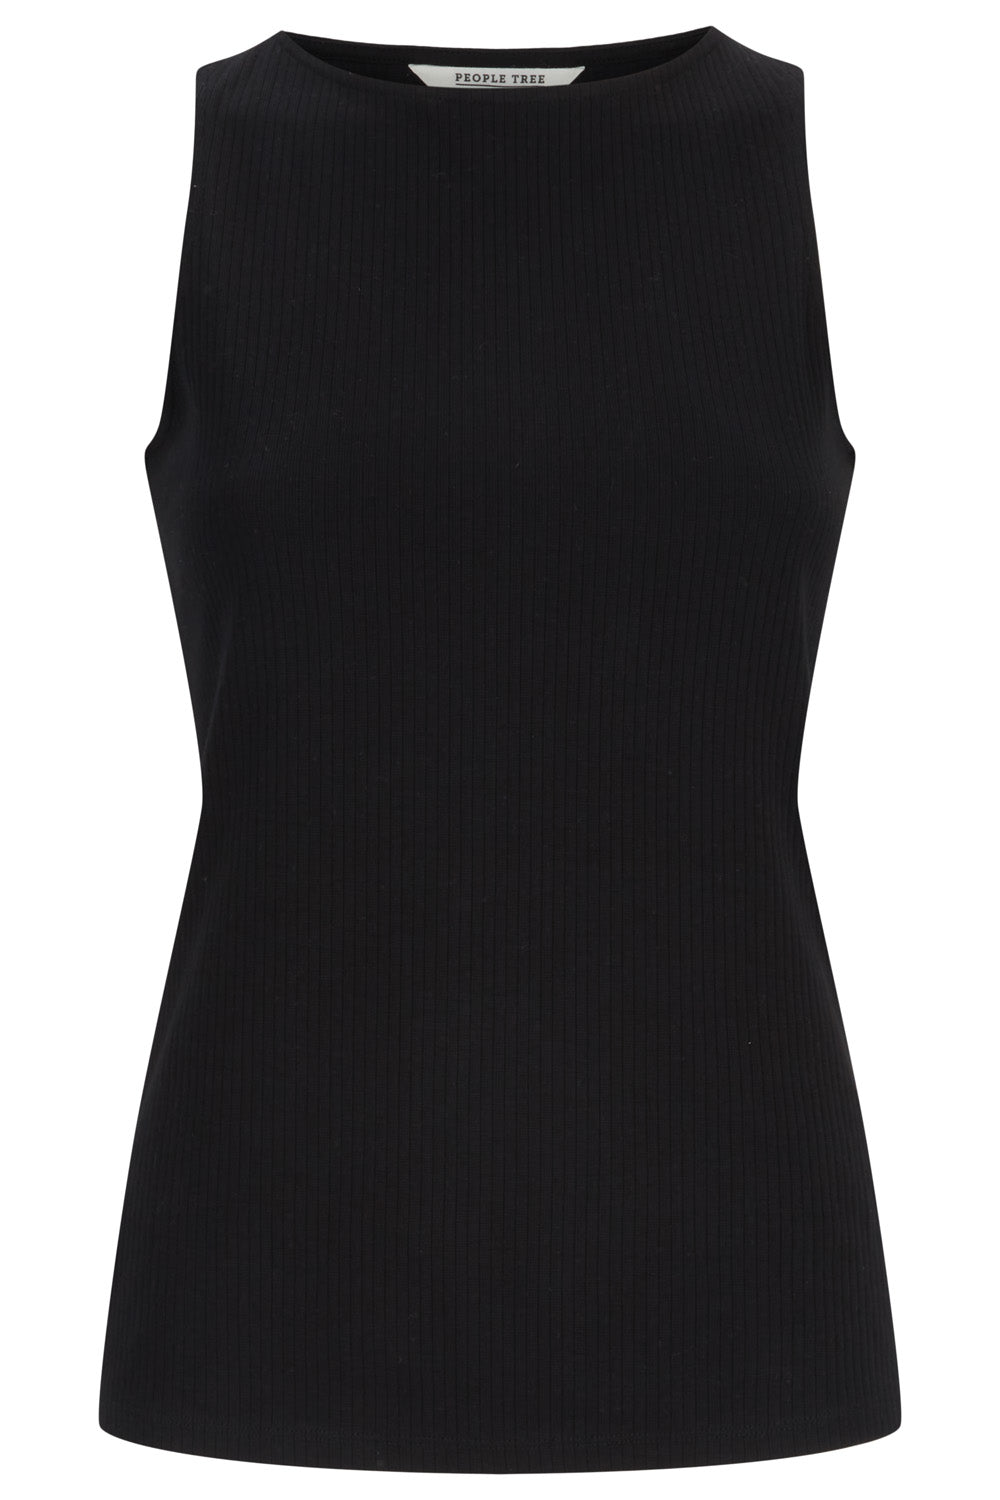 Lyana Ribbed Vest in Black